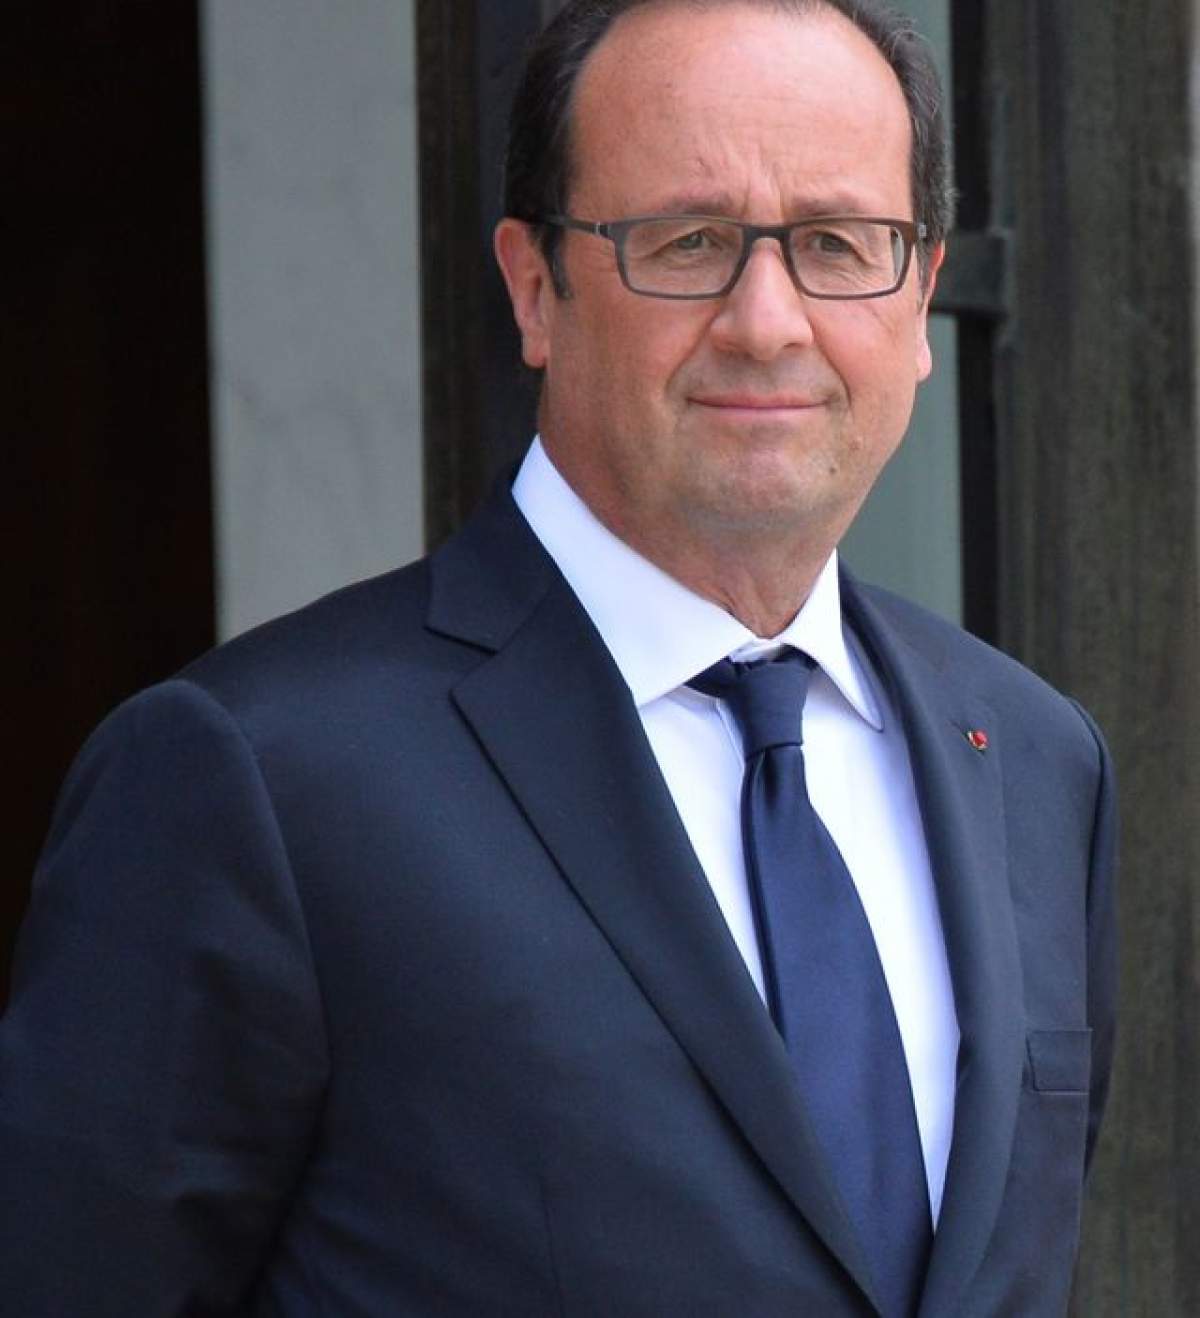 Au apărut primele fotografii cu preşedintele Hollande și amanta, actriţa Julie Gayet